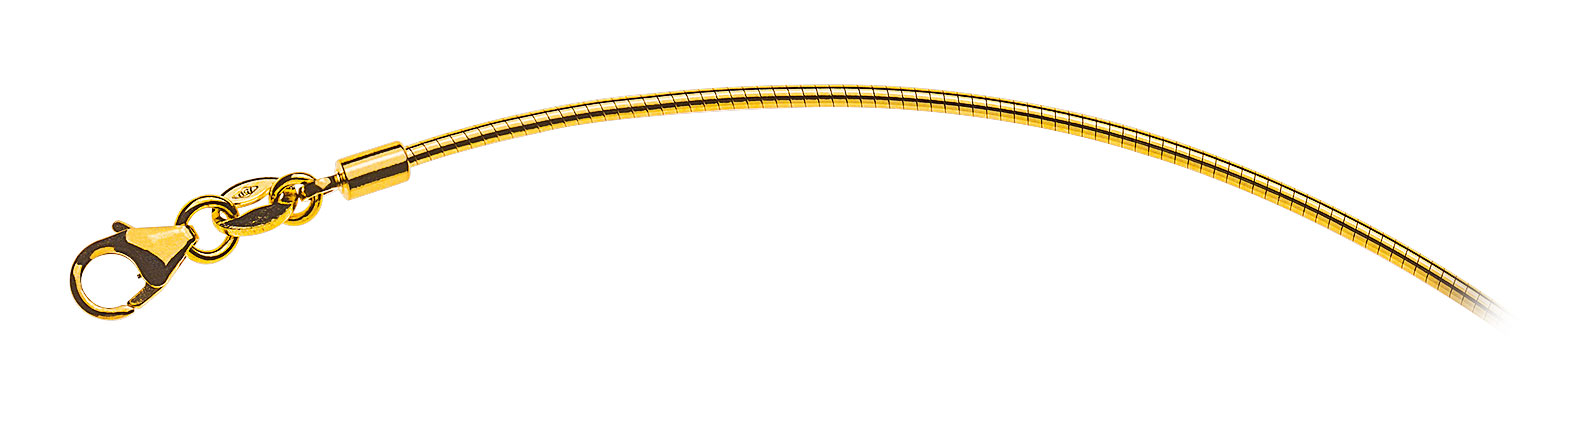 AURONOS Prestige Halskette Gelbgold 18K Omegakette 40cm 1.4mm